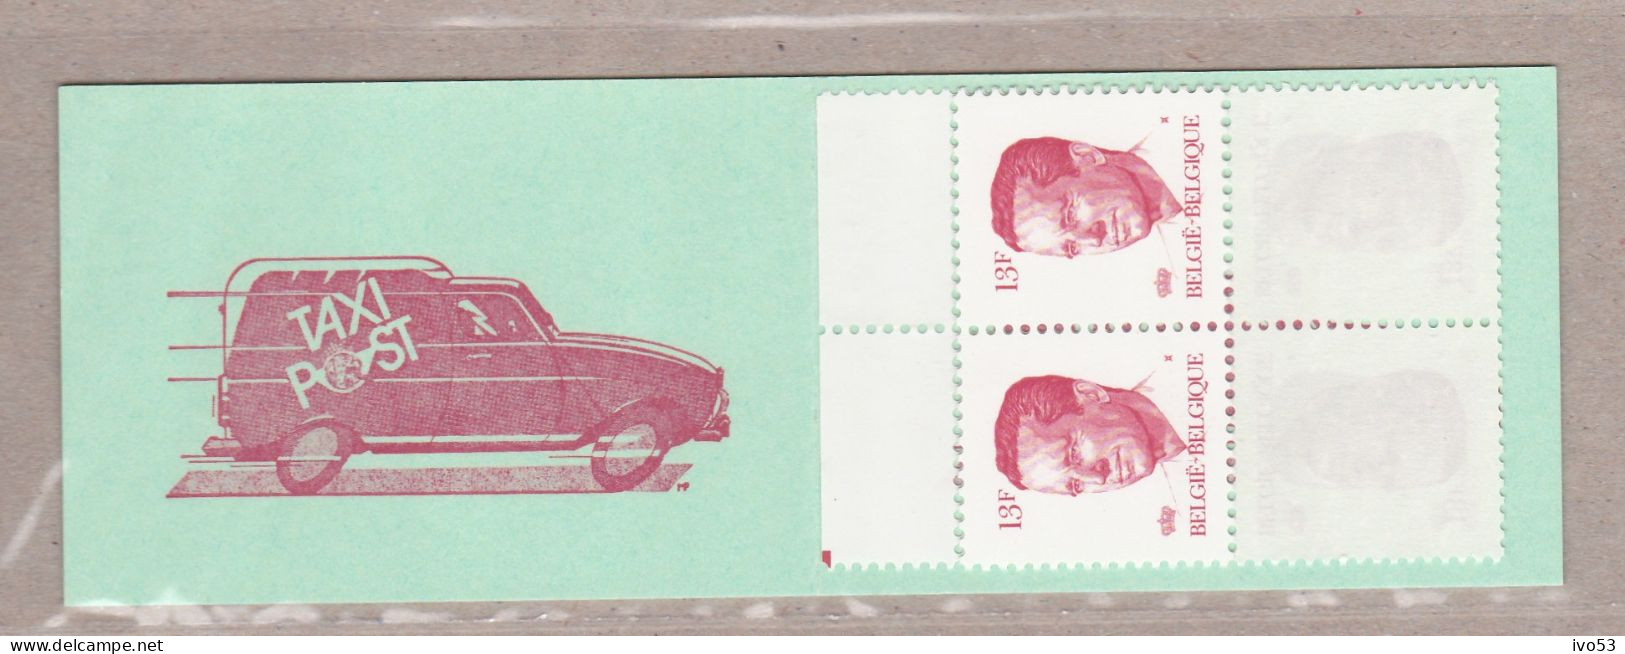 1986 B18** Postzegelboekje Taxipost.OBP 40 Euro. - Unclassified